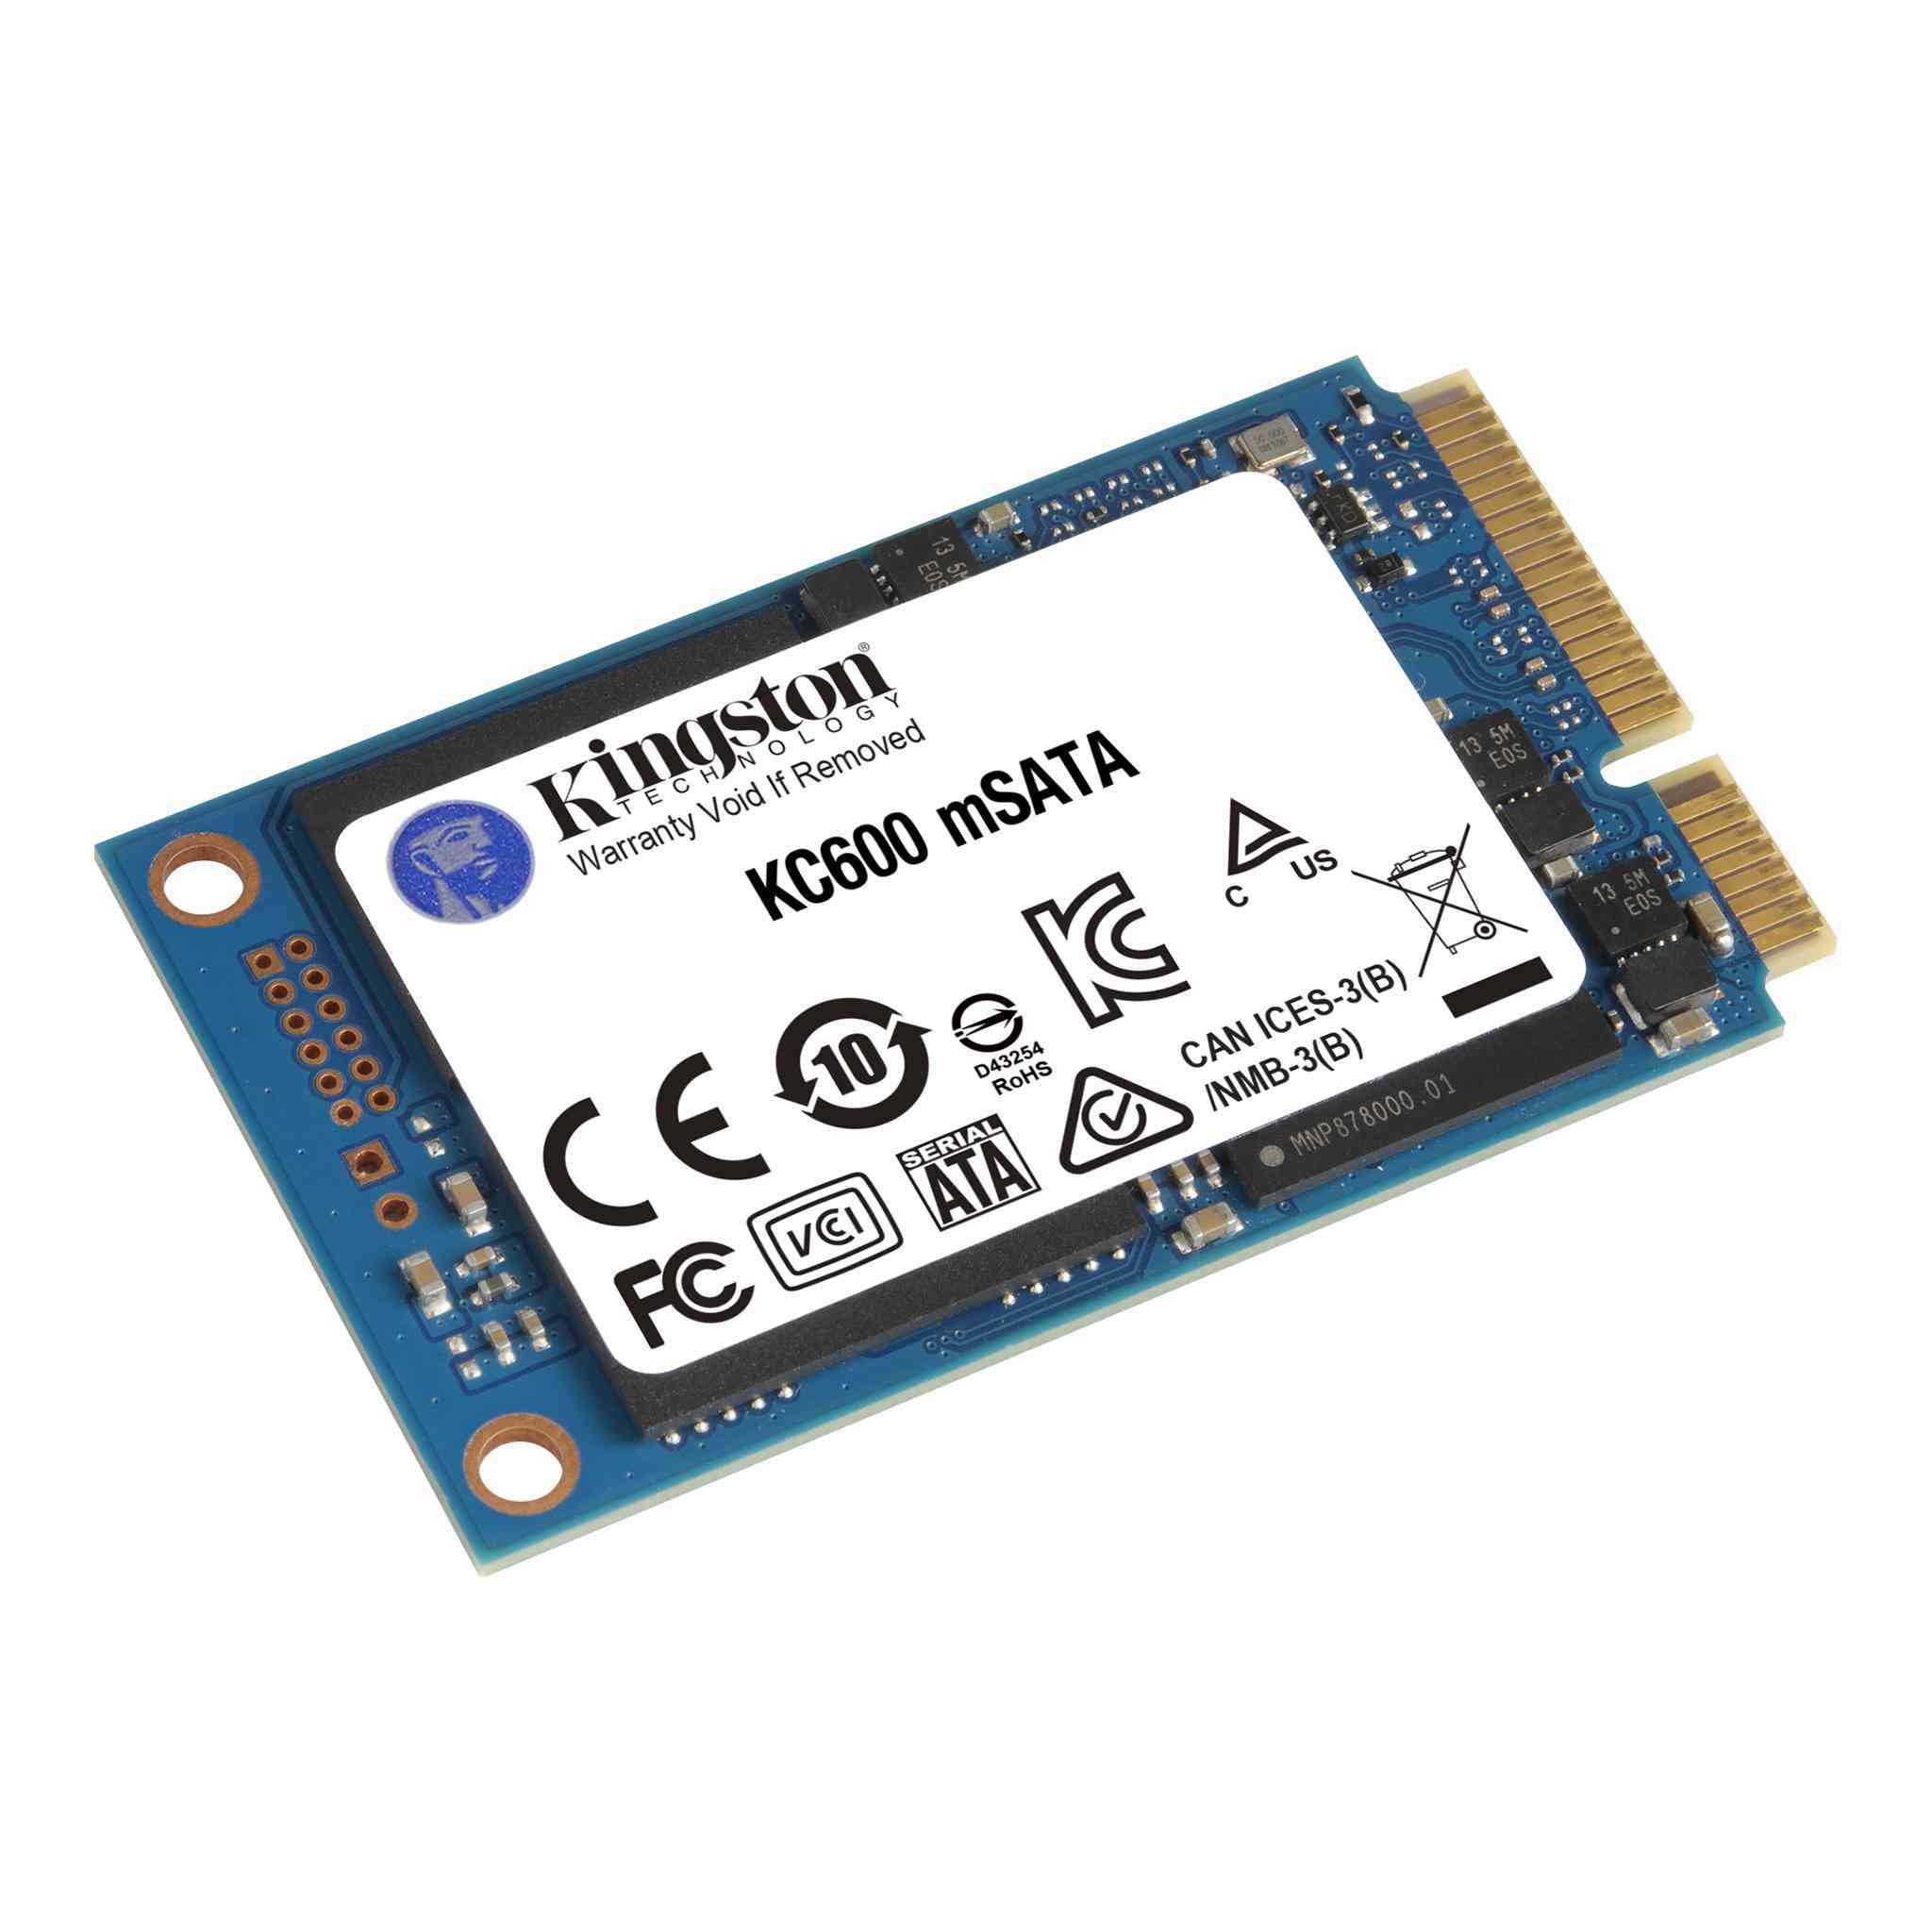 suma Credencial creencia KC600: disco SSD de 2,5" y mSATAde hasta 2 TB con autocifrado basado en  hardware y NAND TLC 3D - Kingston Technology